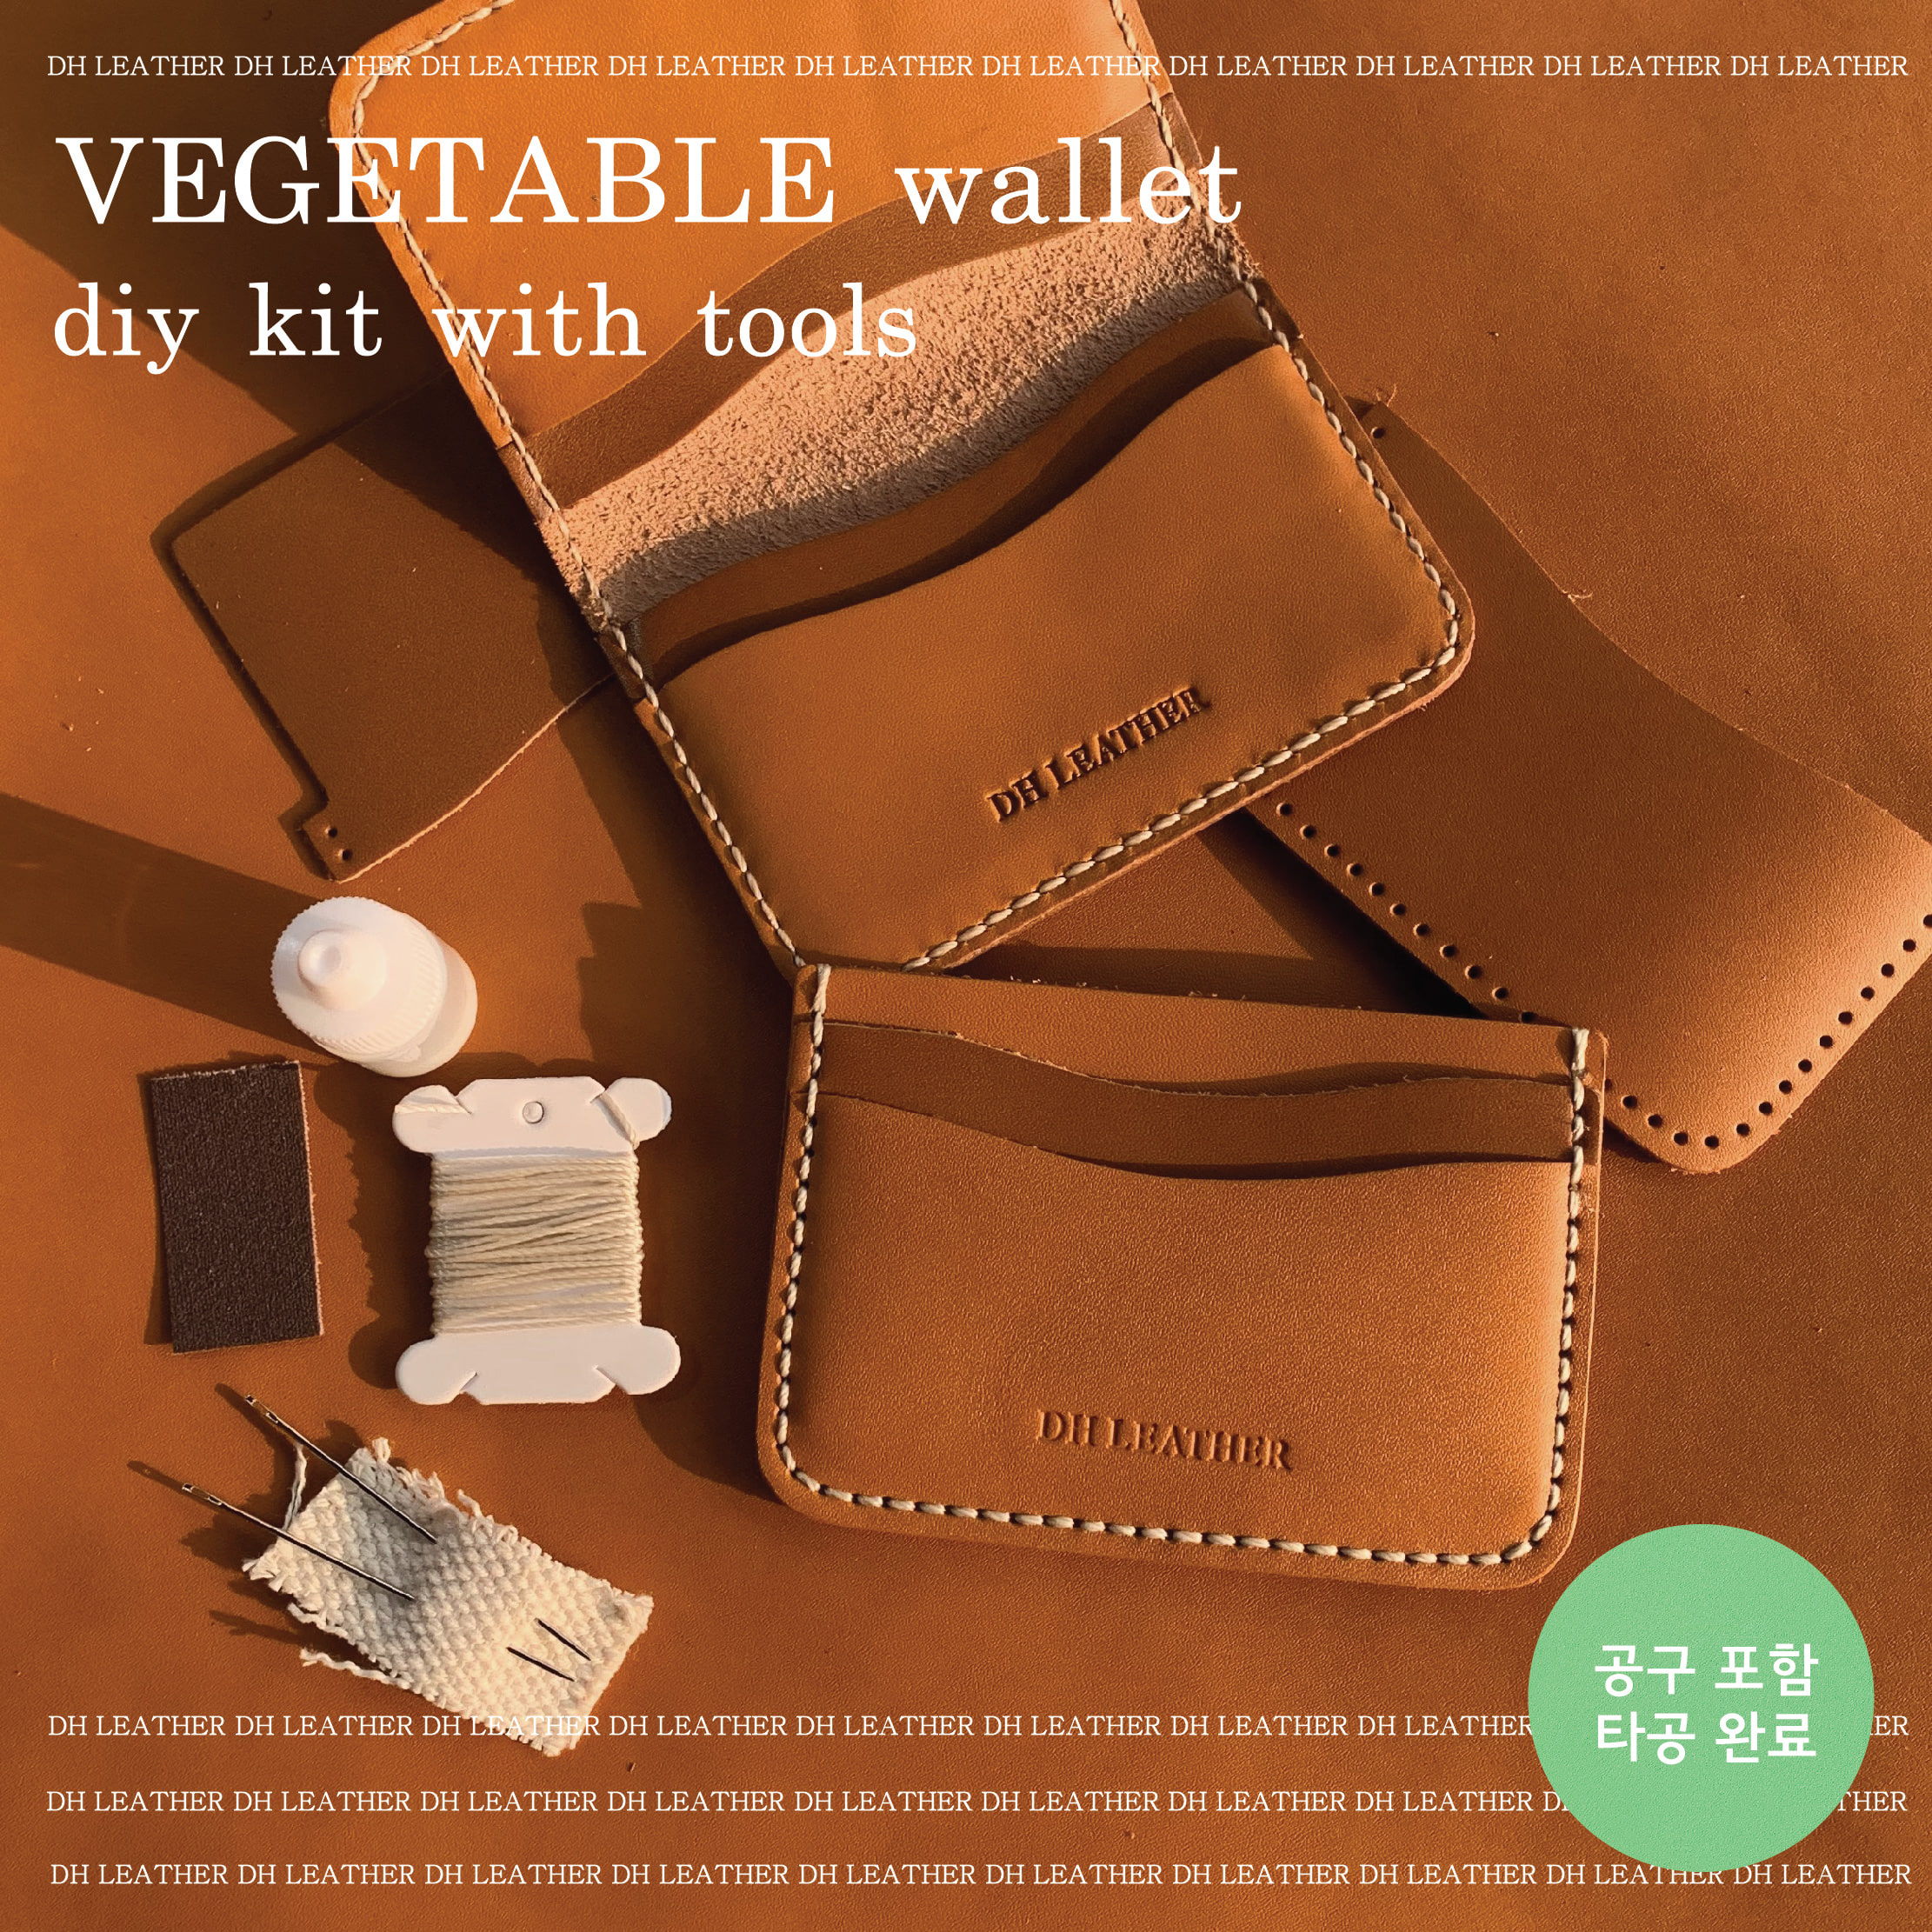 공구포함 카드지갑 DIY KIT 폴딩/포켓 - 베지터블 바케타 (이태리)